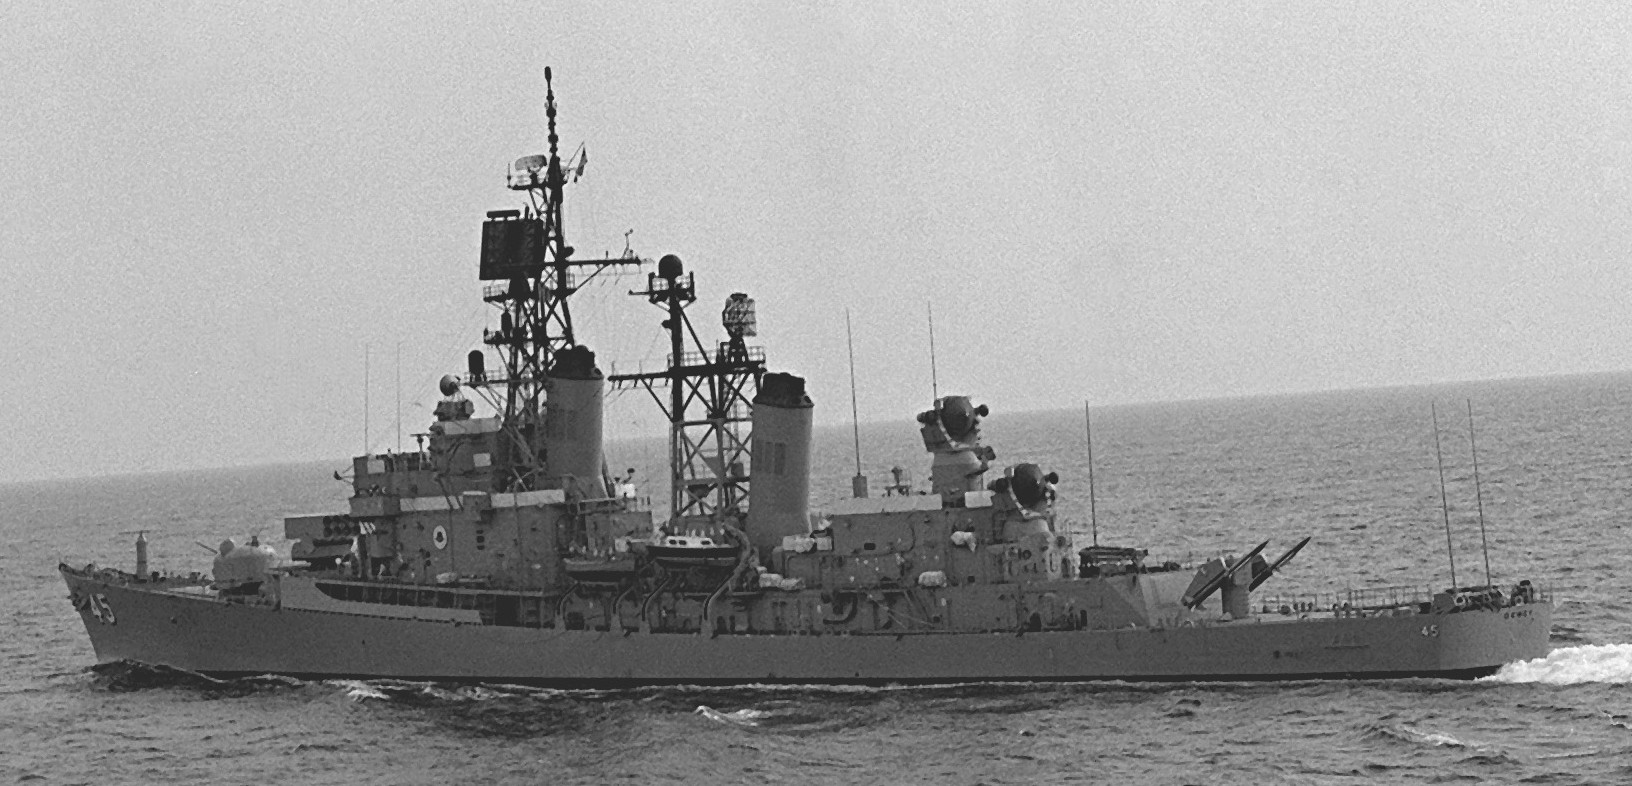 ddg-45 uss dewey farragut class destroyer us navy 1979 02 exercise unitas xx